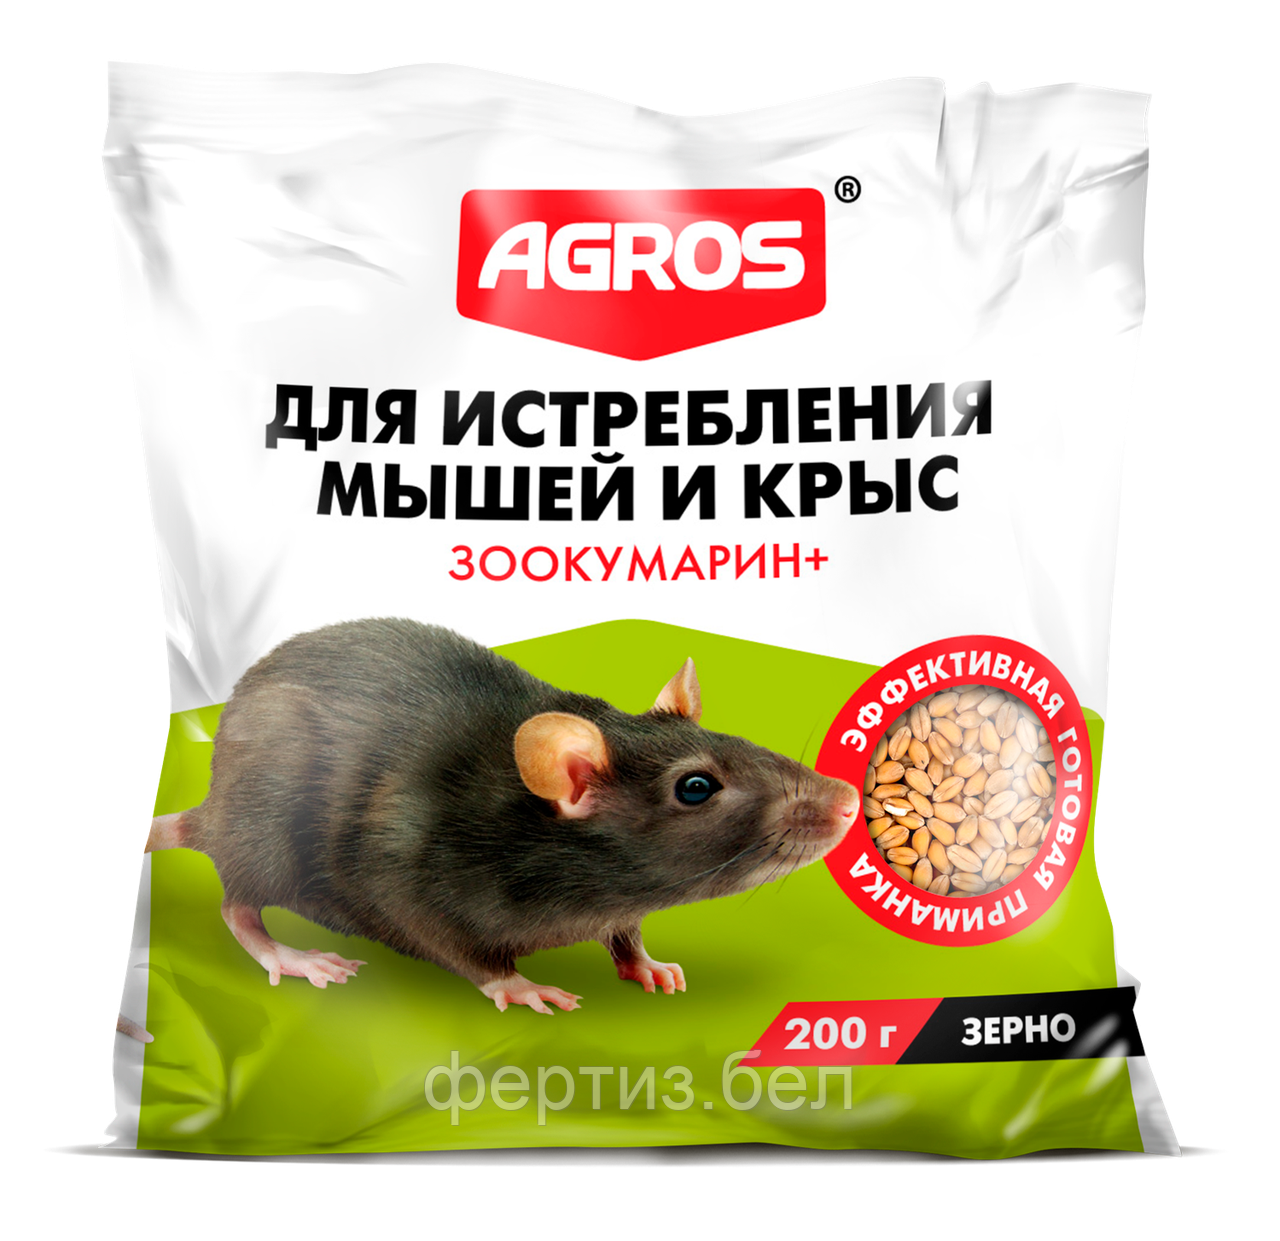 Зерно для истребления мышей и крыс (200г)